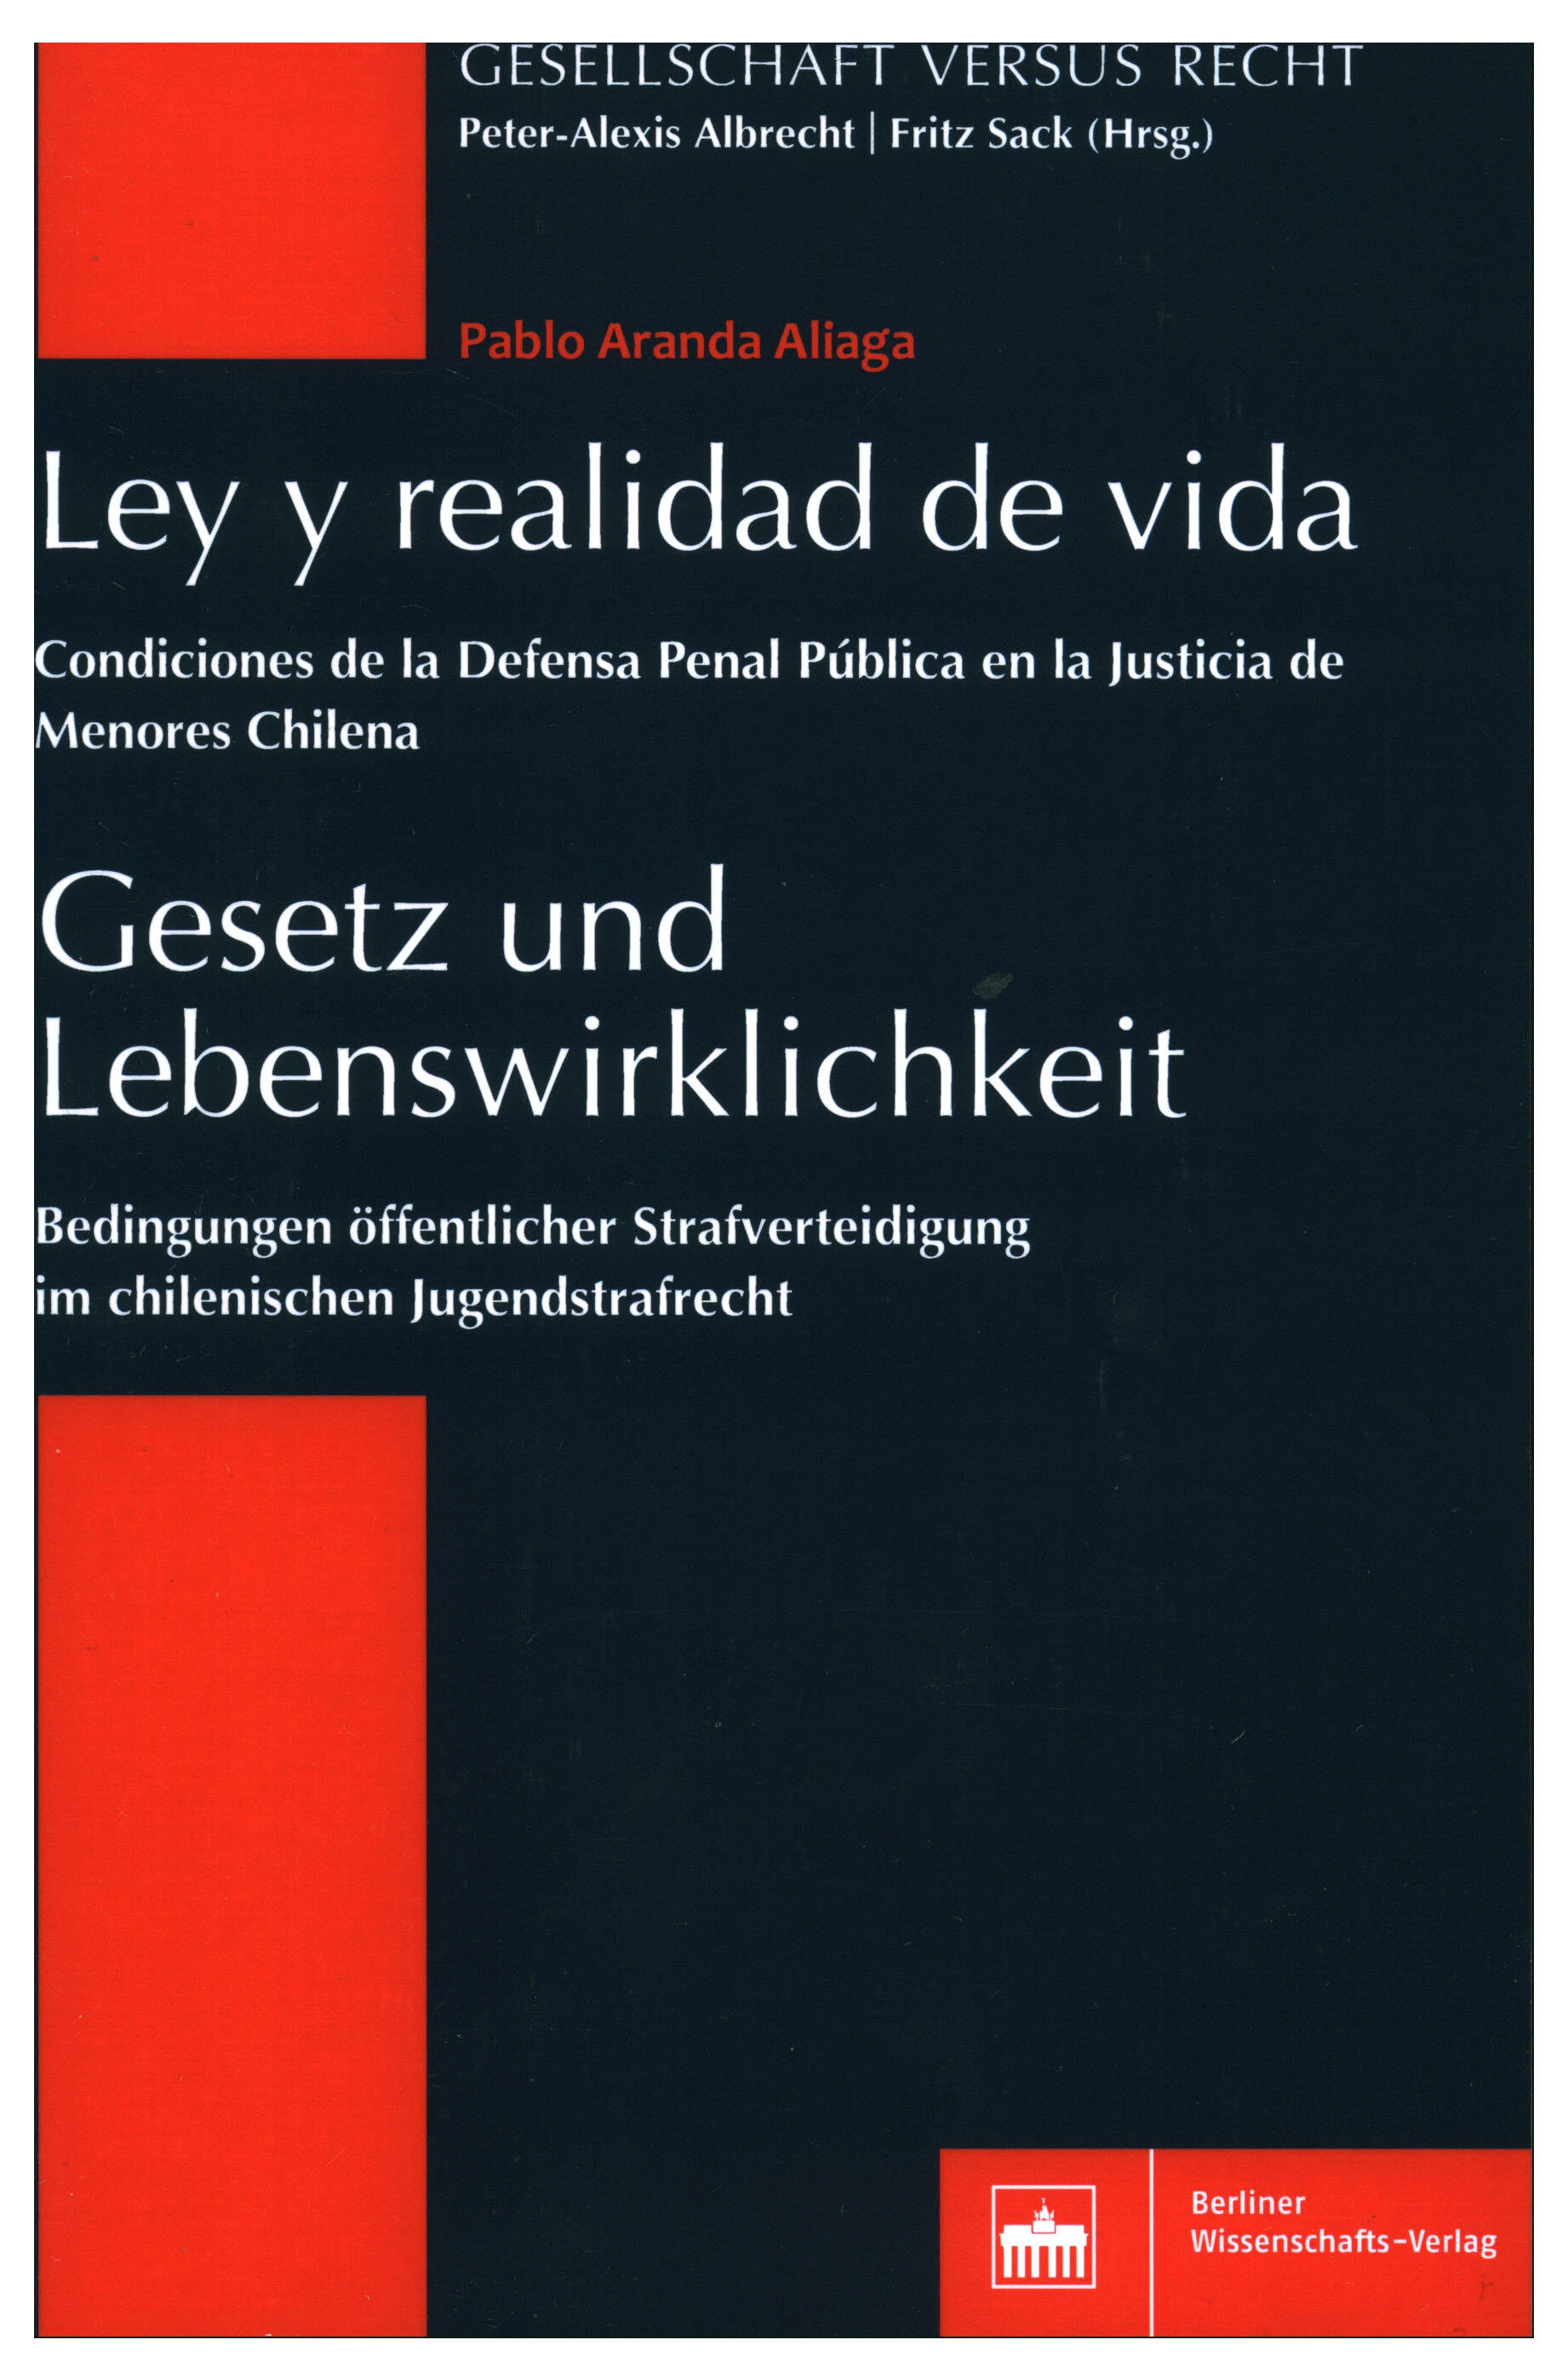 Ley y realidad de vida. Condiciones de la defensa penal pública en la justicia de menores chilena.